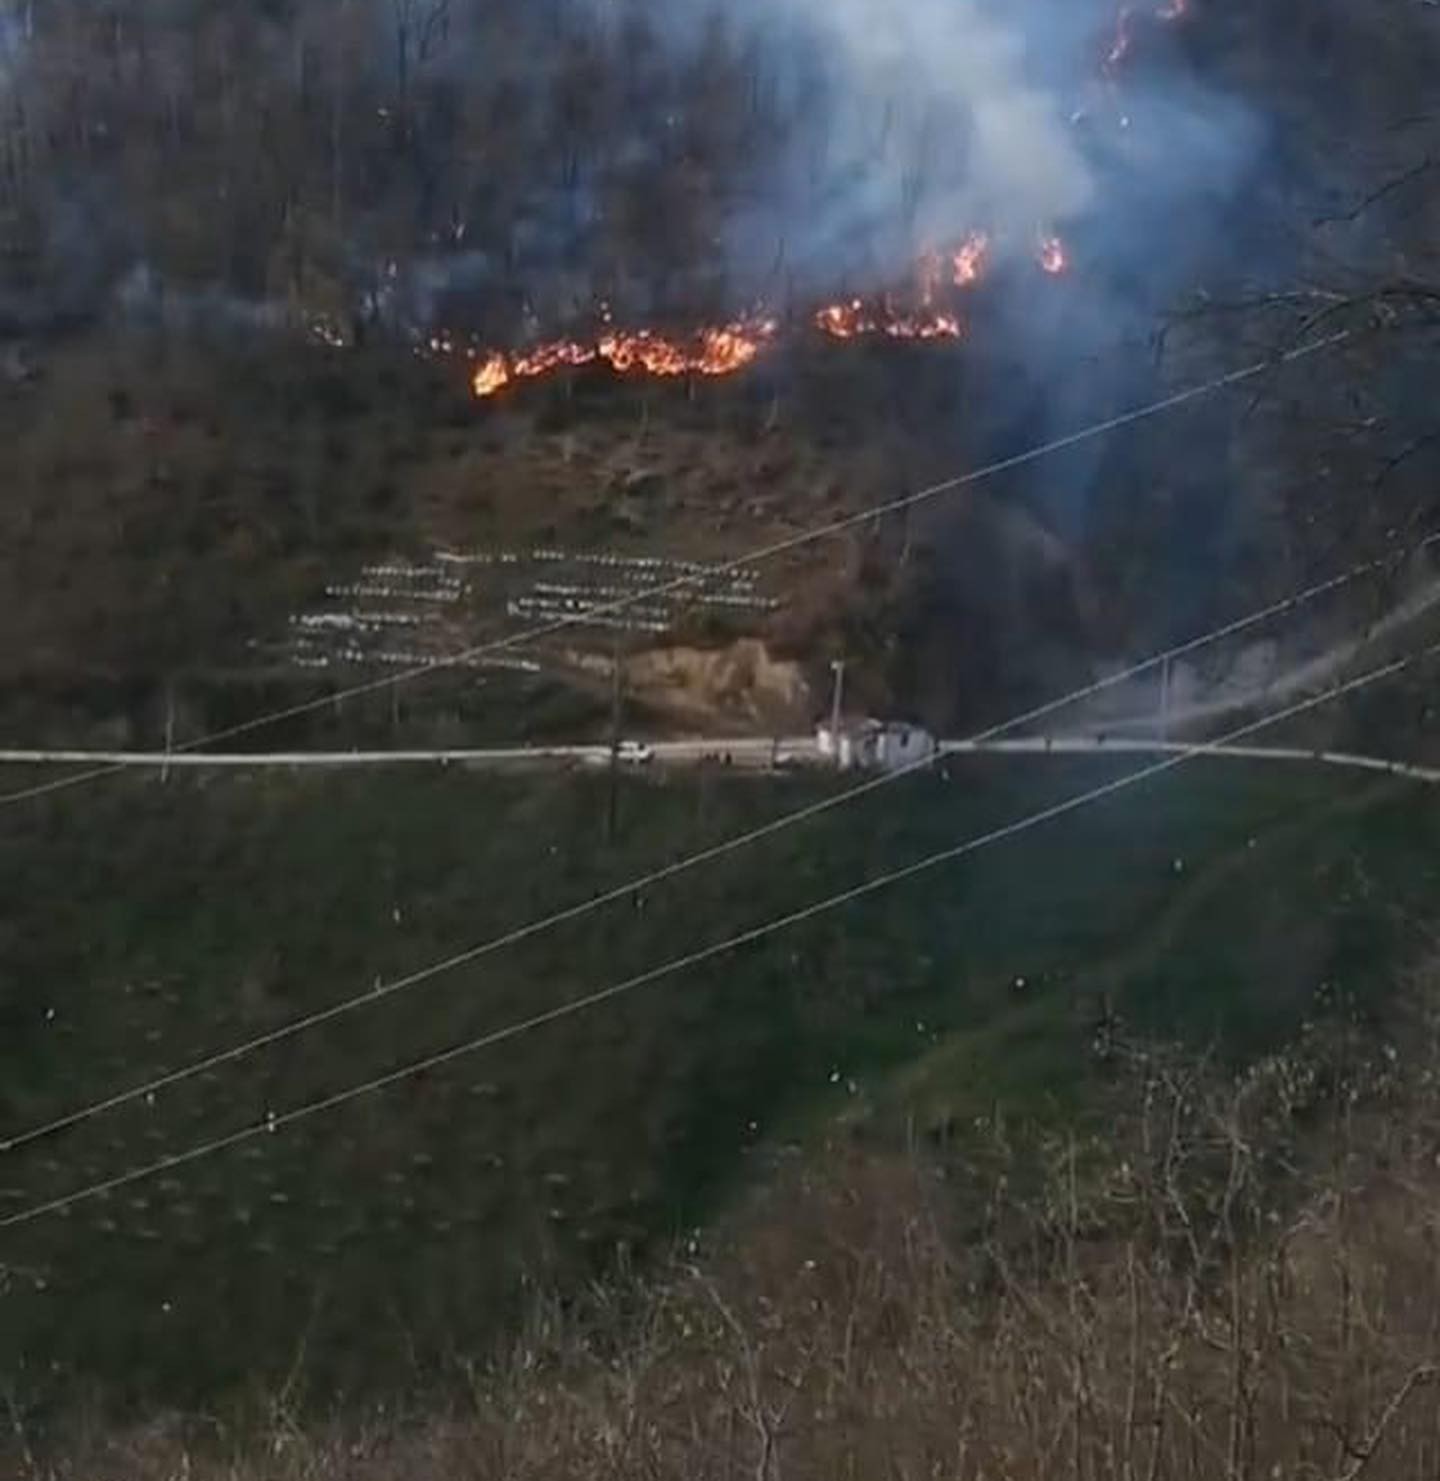 Bahçesinde ateş yakarken ormanlık alanda yangına neden oldu #ordu